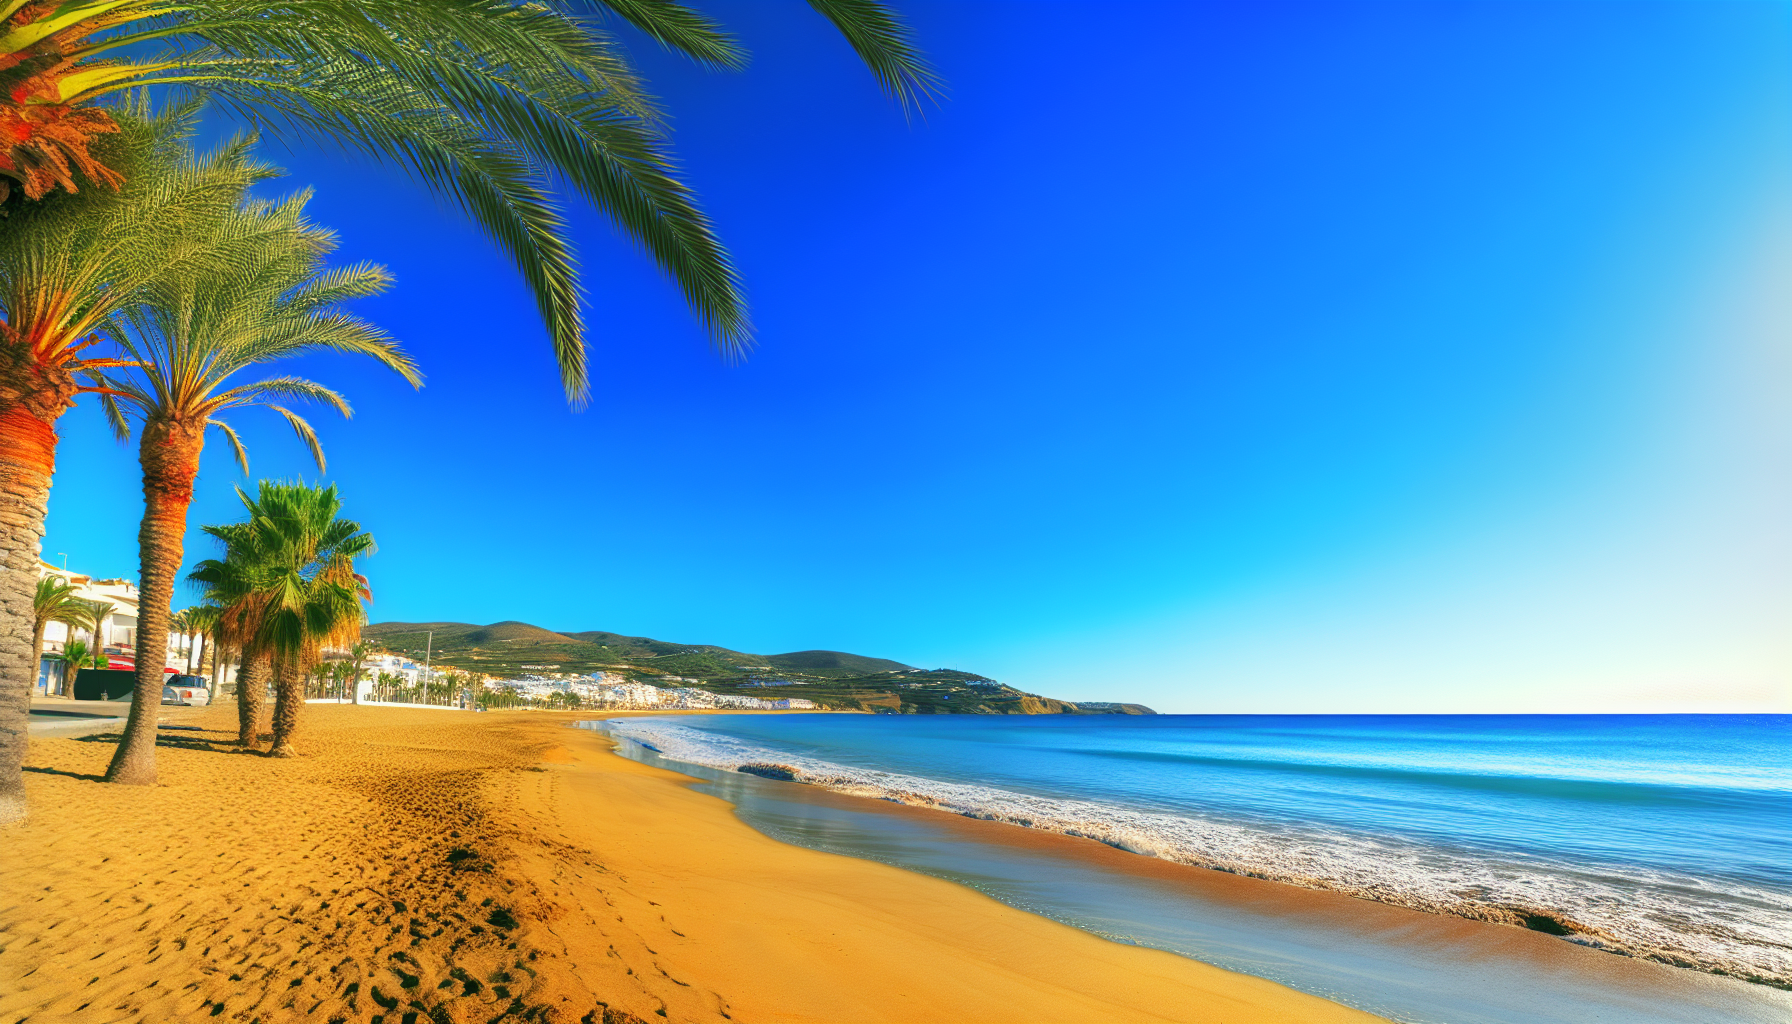 Zonnige stranddag met palmbomen en helderblauwe hemel.